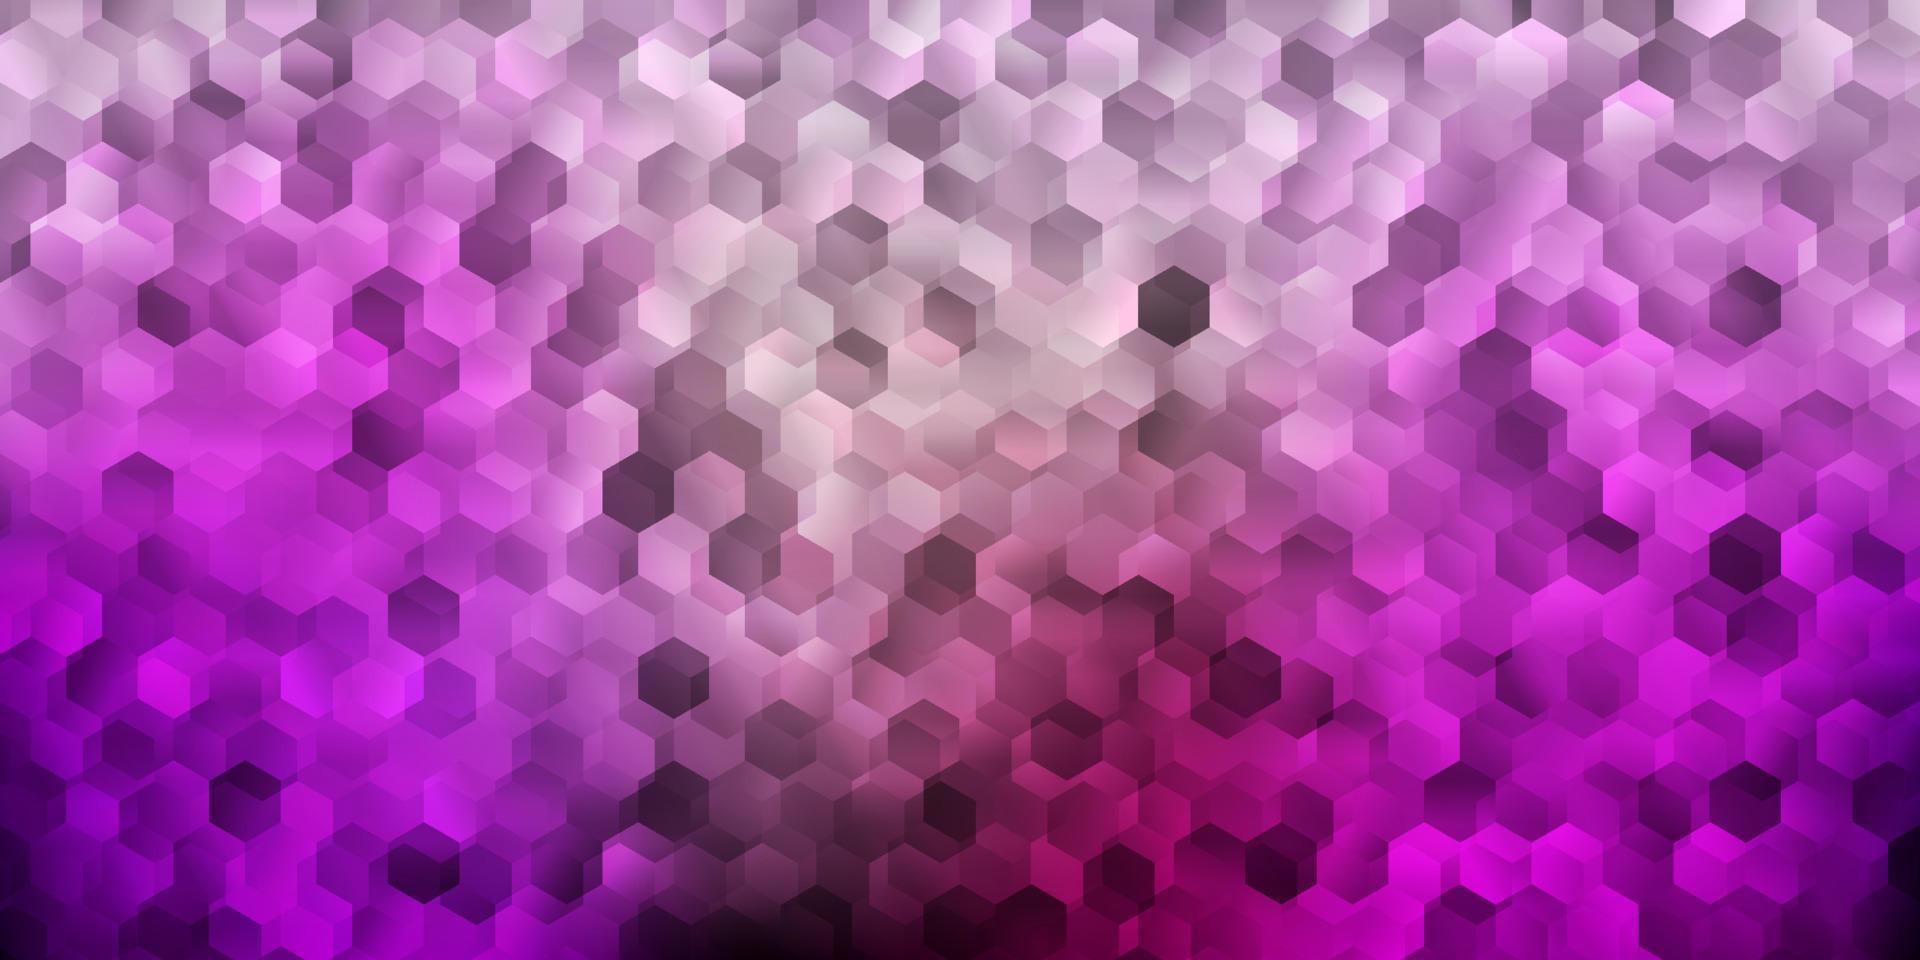 modelo de vetor roxo e rosa escuro em estilo hexagonal.